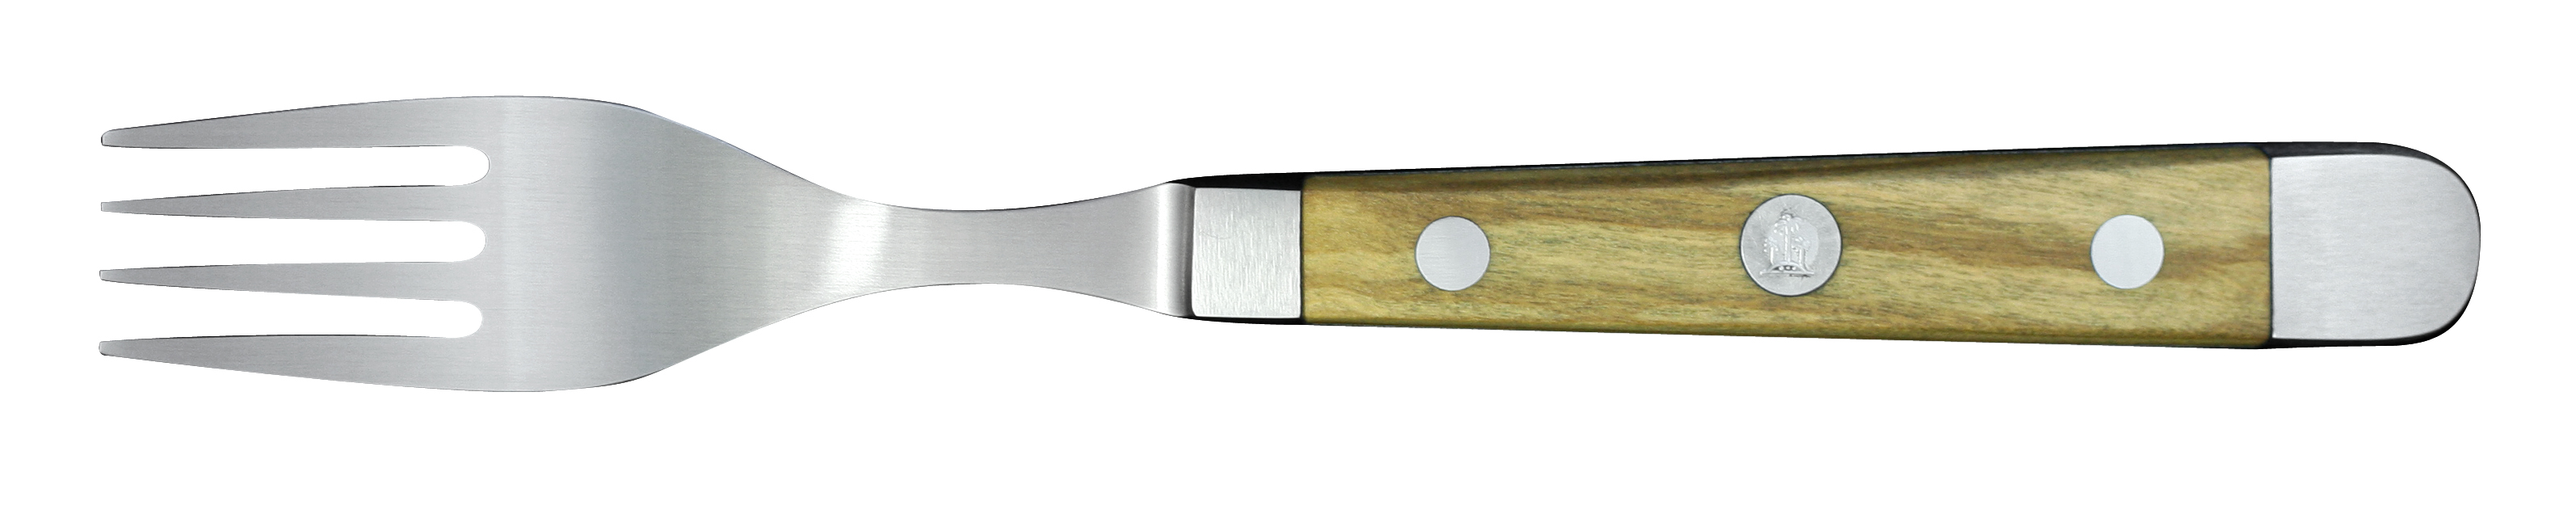 Güde Alpha Olive Tafelgabel 12 cm - CVM-Messerstahl mit Griffschalen aus Olivenholz